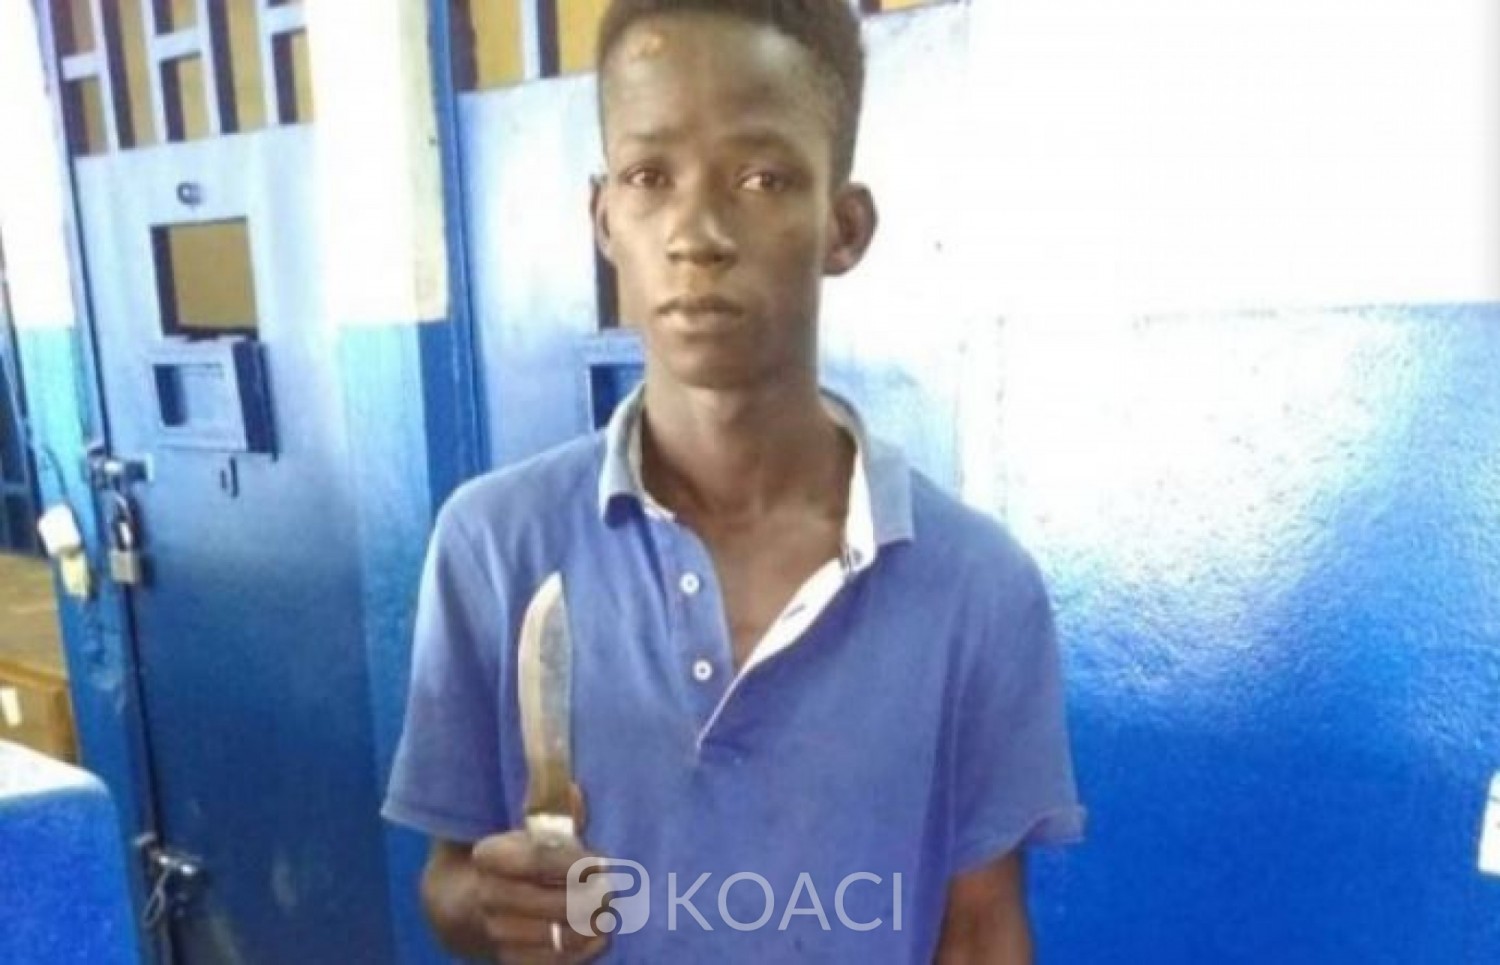 Côte d'Ivoire: À Abobo, un coiffeur interpellé alors qu'il tentait à l'aide d'un couteau de voler le sac d'une femme